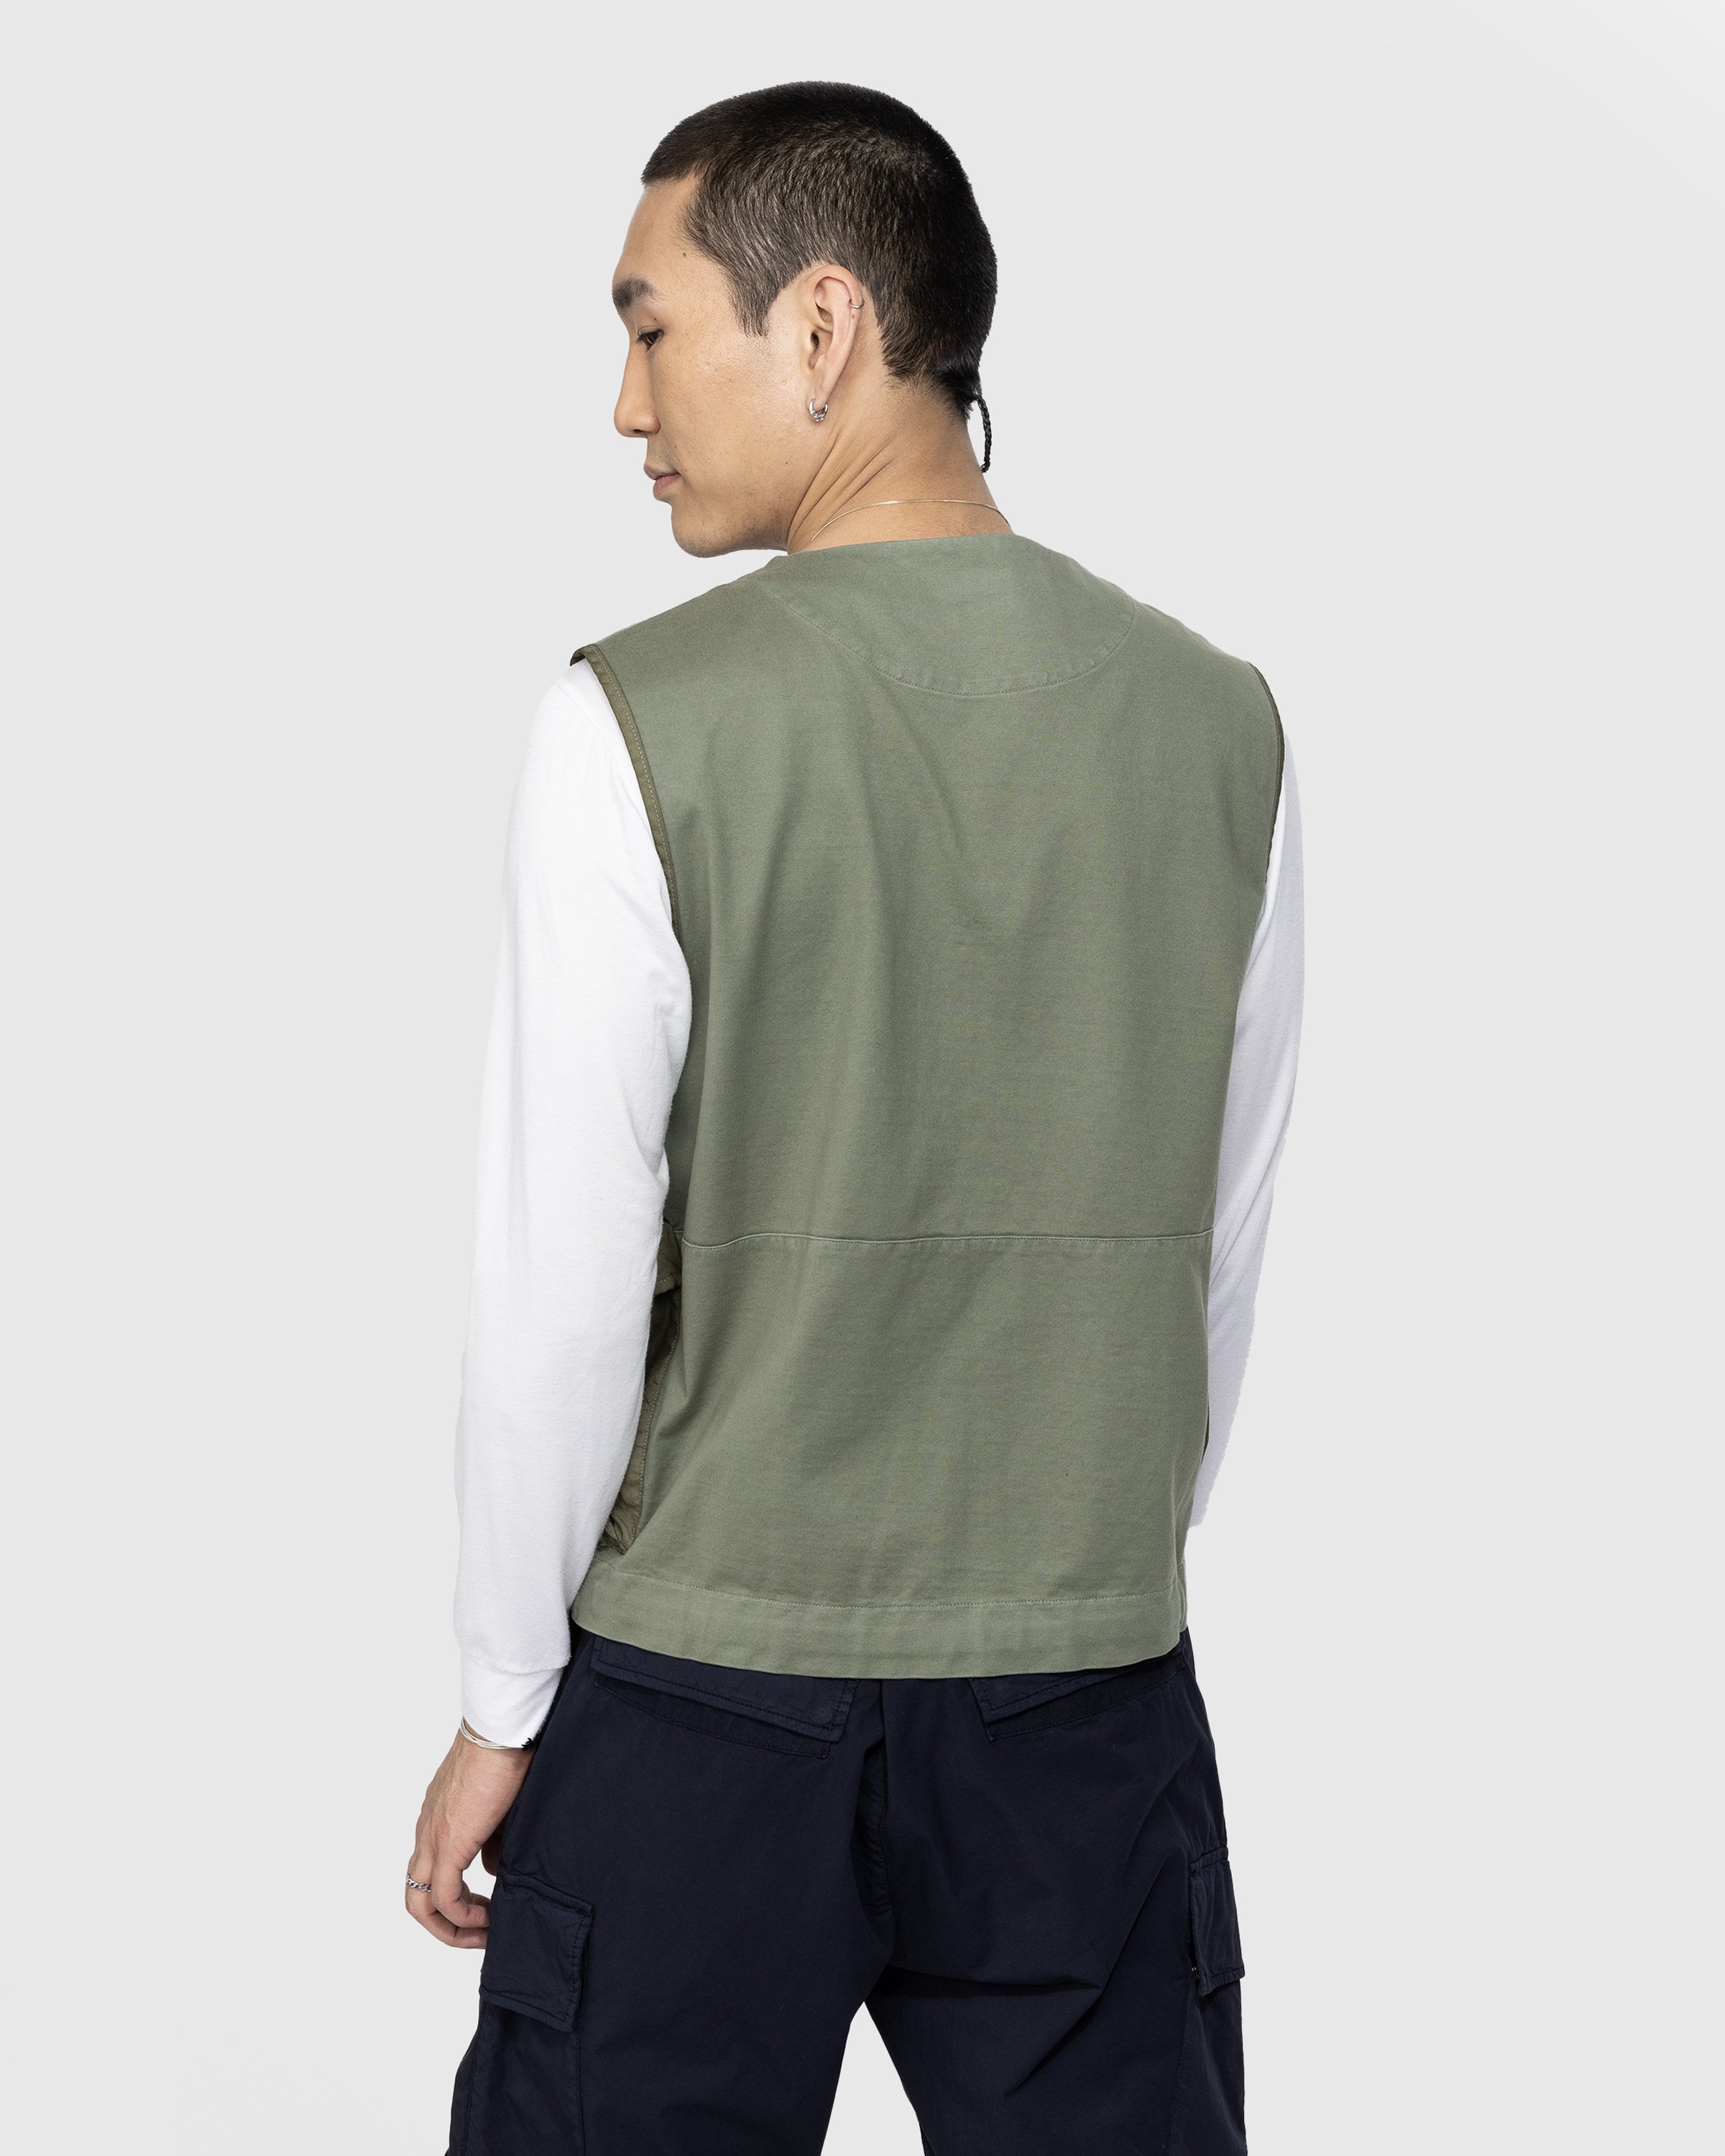 C.P. Company - Mercerized Heavy Jersey Mixed Zipped Vest Green - Clothing - Green - Image 3